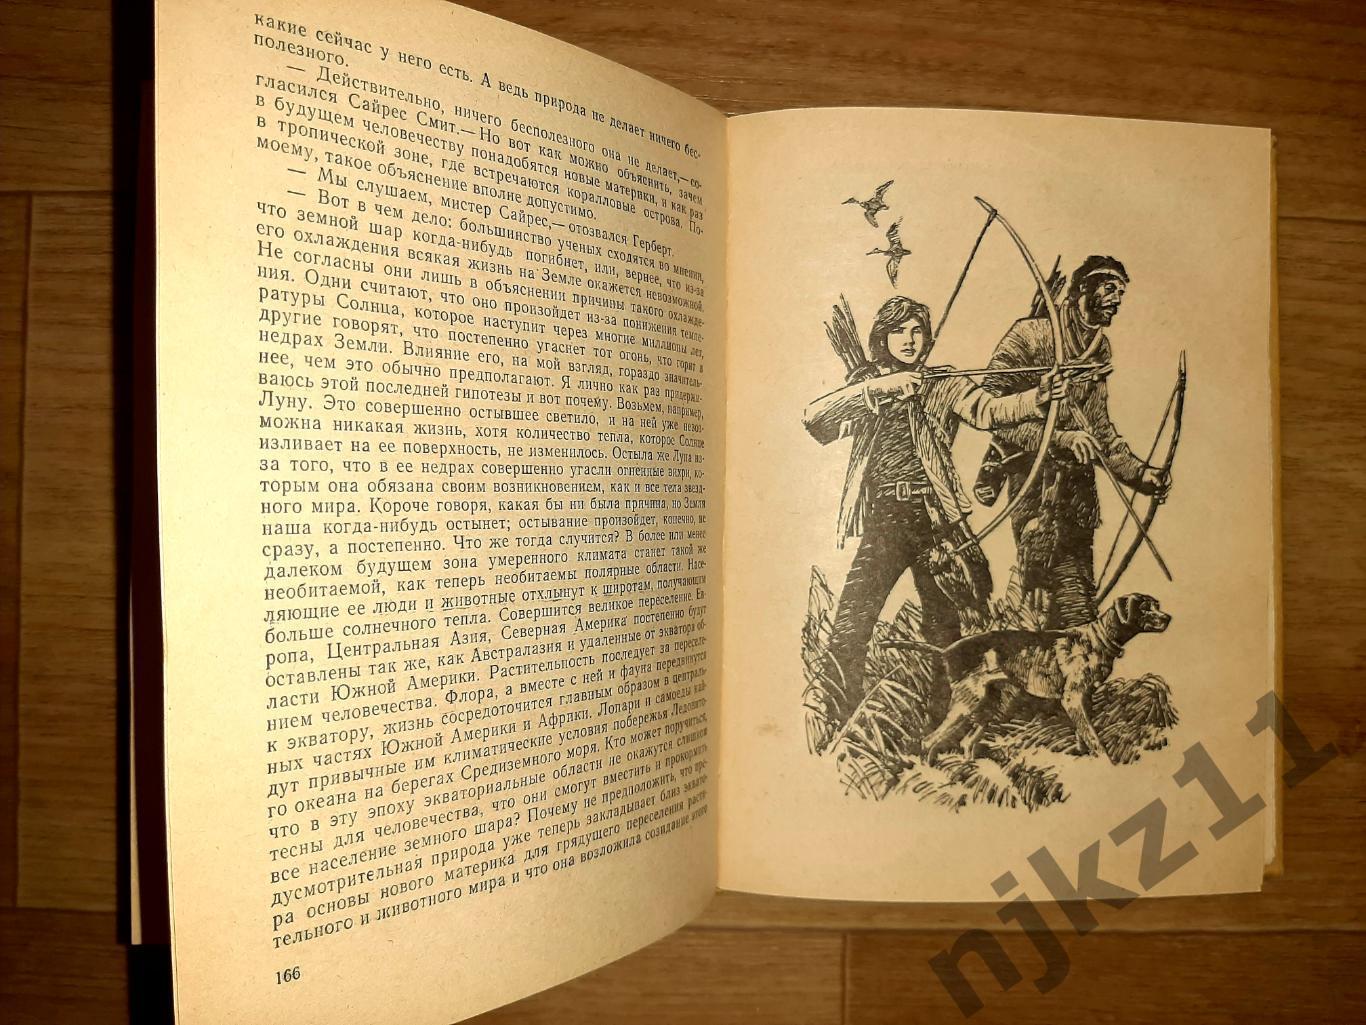 Верн, Жюль Таинственный остров 1981г волго-вятское кн.изд 3